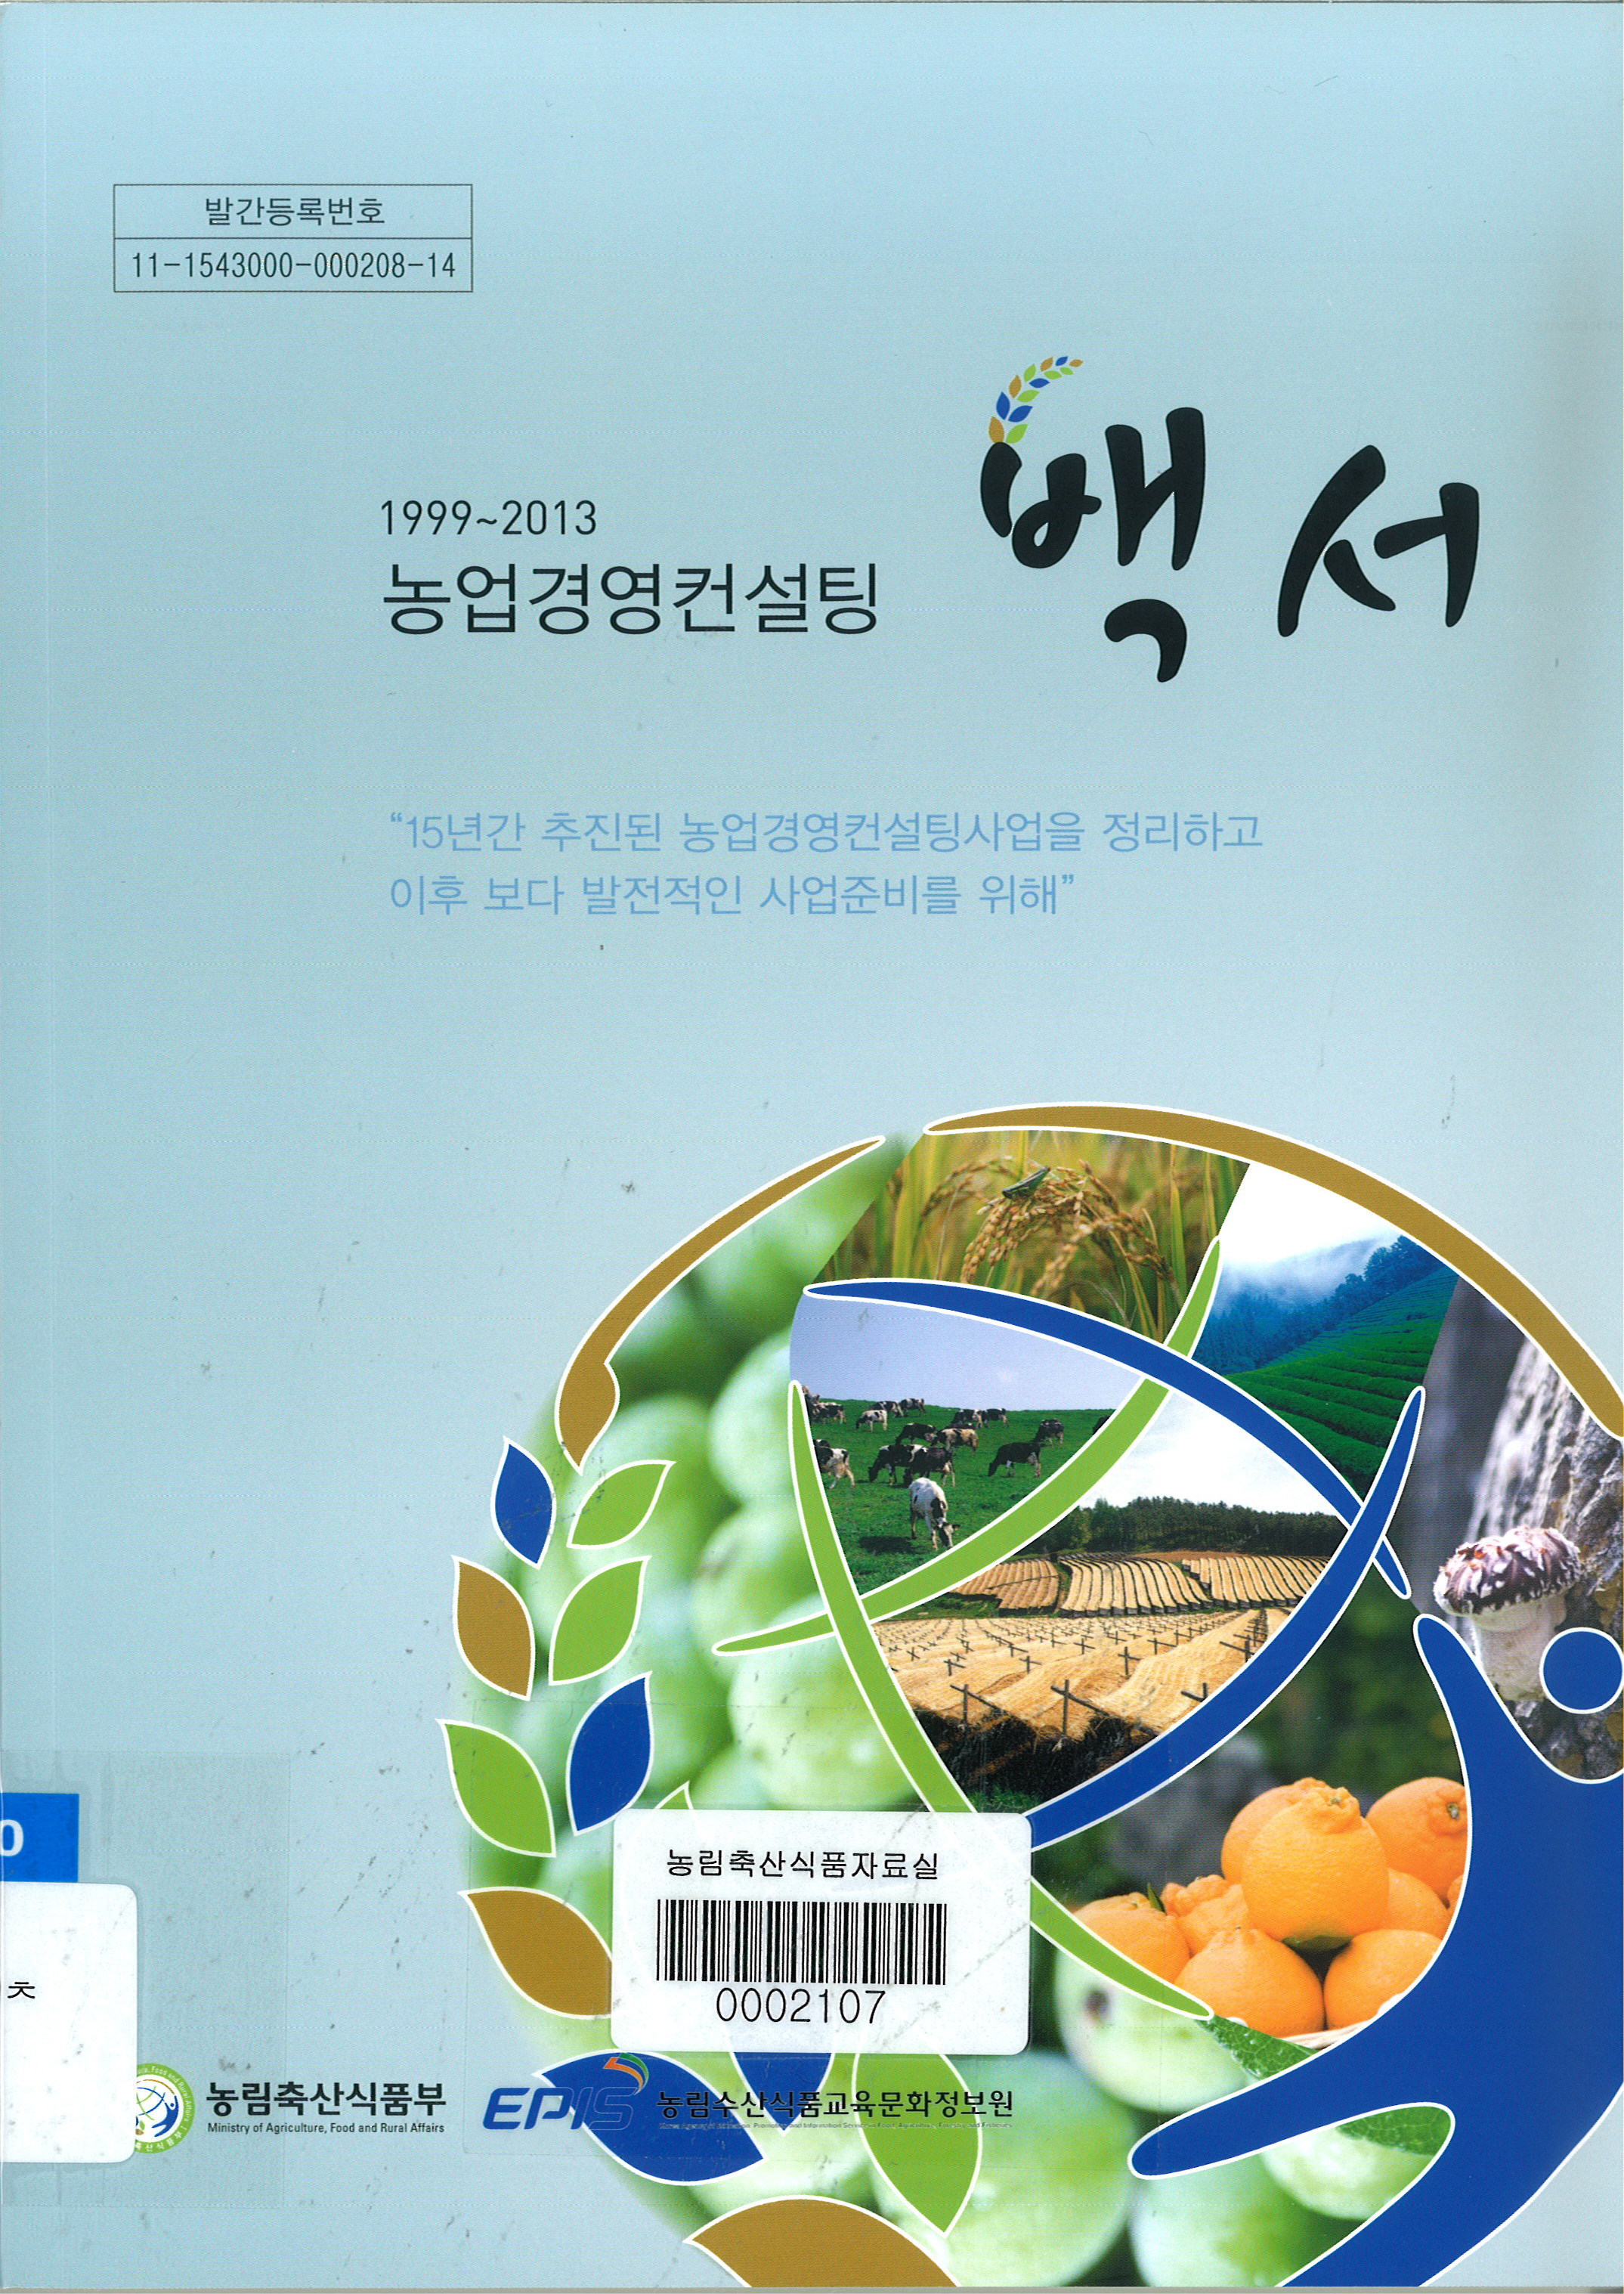 1999~2013 농업경영컨설팅 백서 / 농림축산식품부 경영인력과 ; 농림수산식품교육문화정보원 [공...